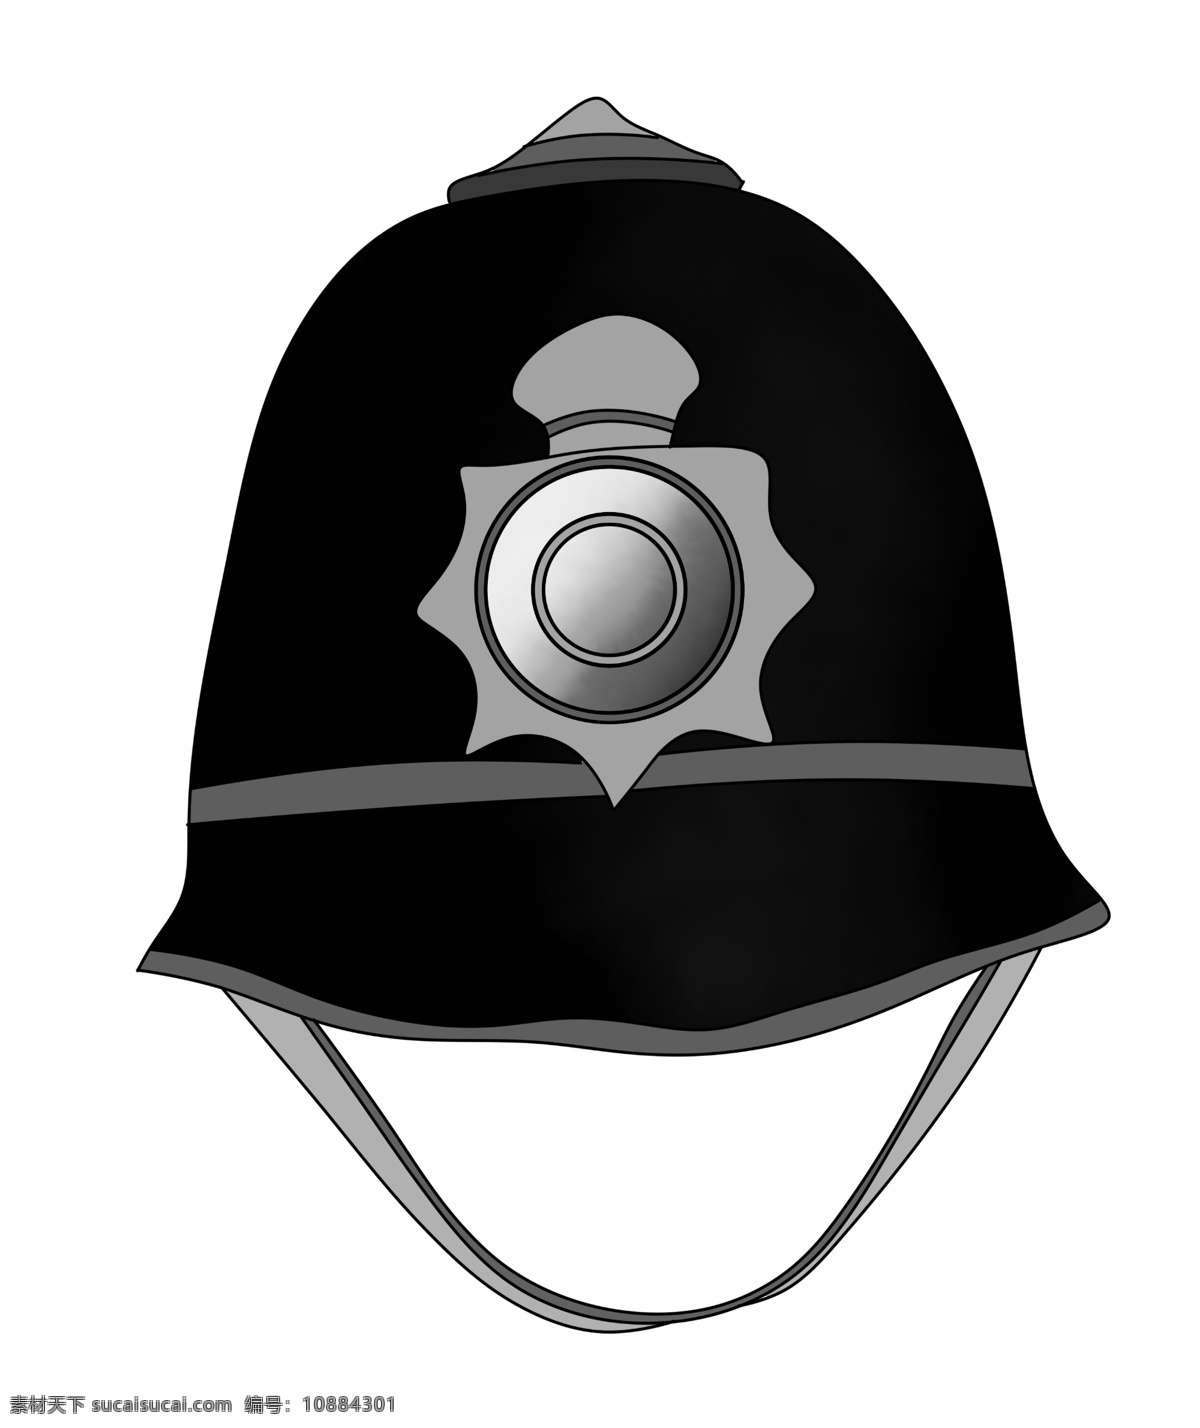 警察 职业 卡通 插画 警察的职业 卡通插画 警察职业 工作插画 警察用品 警察标志 帽子的插画